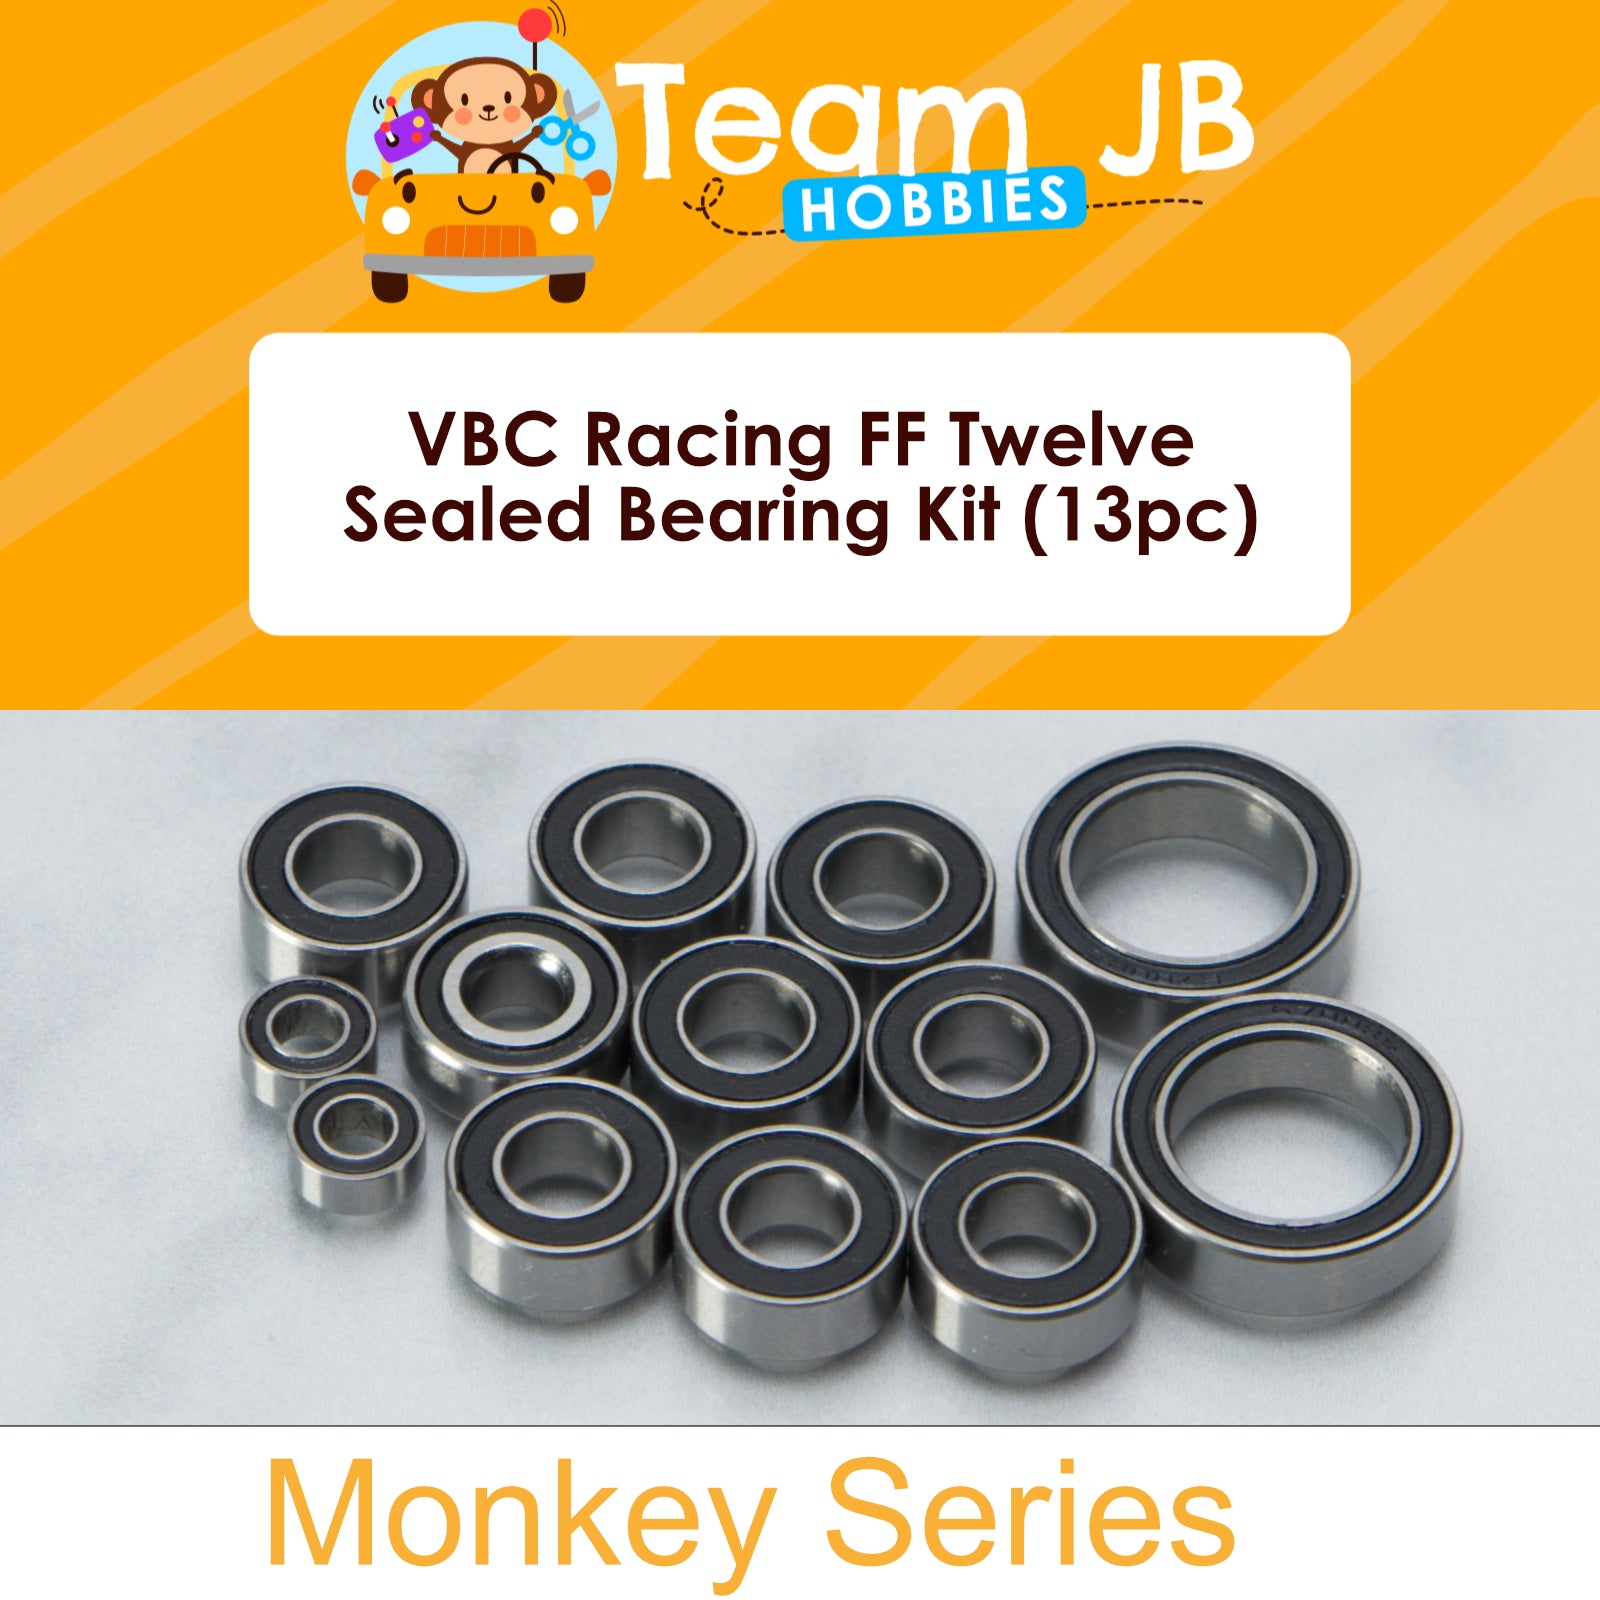 VBC Racing FF Twelve - Sealed Bearing Kit